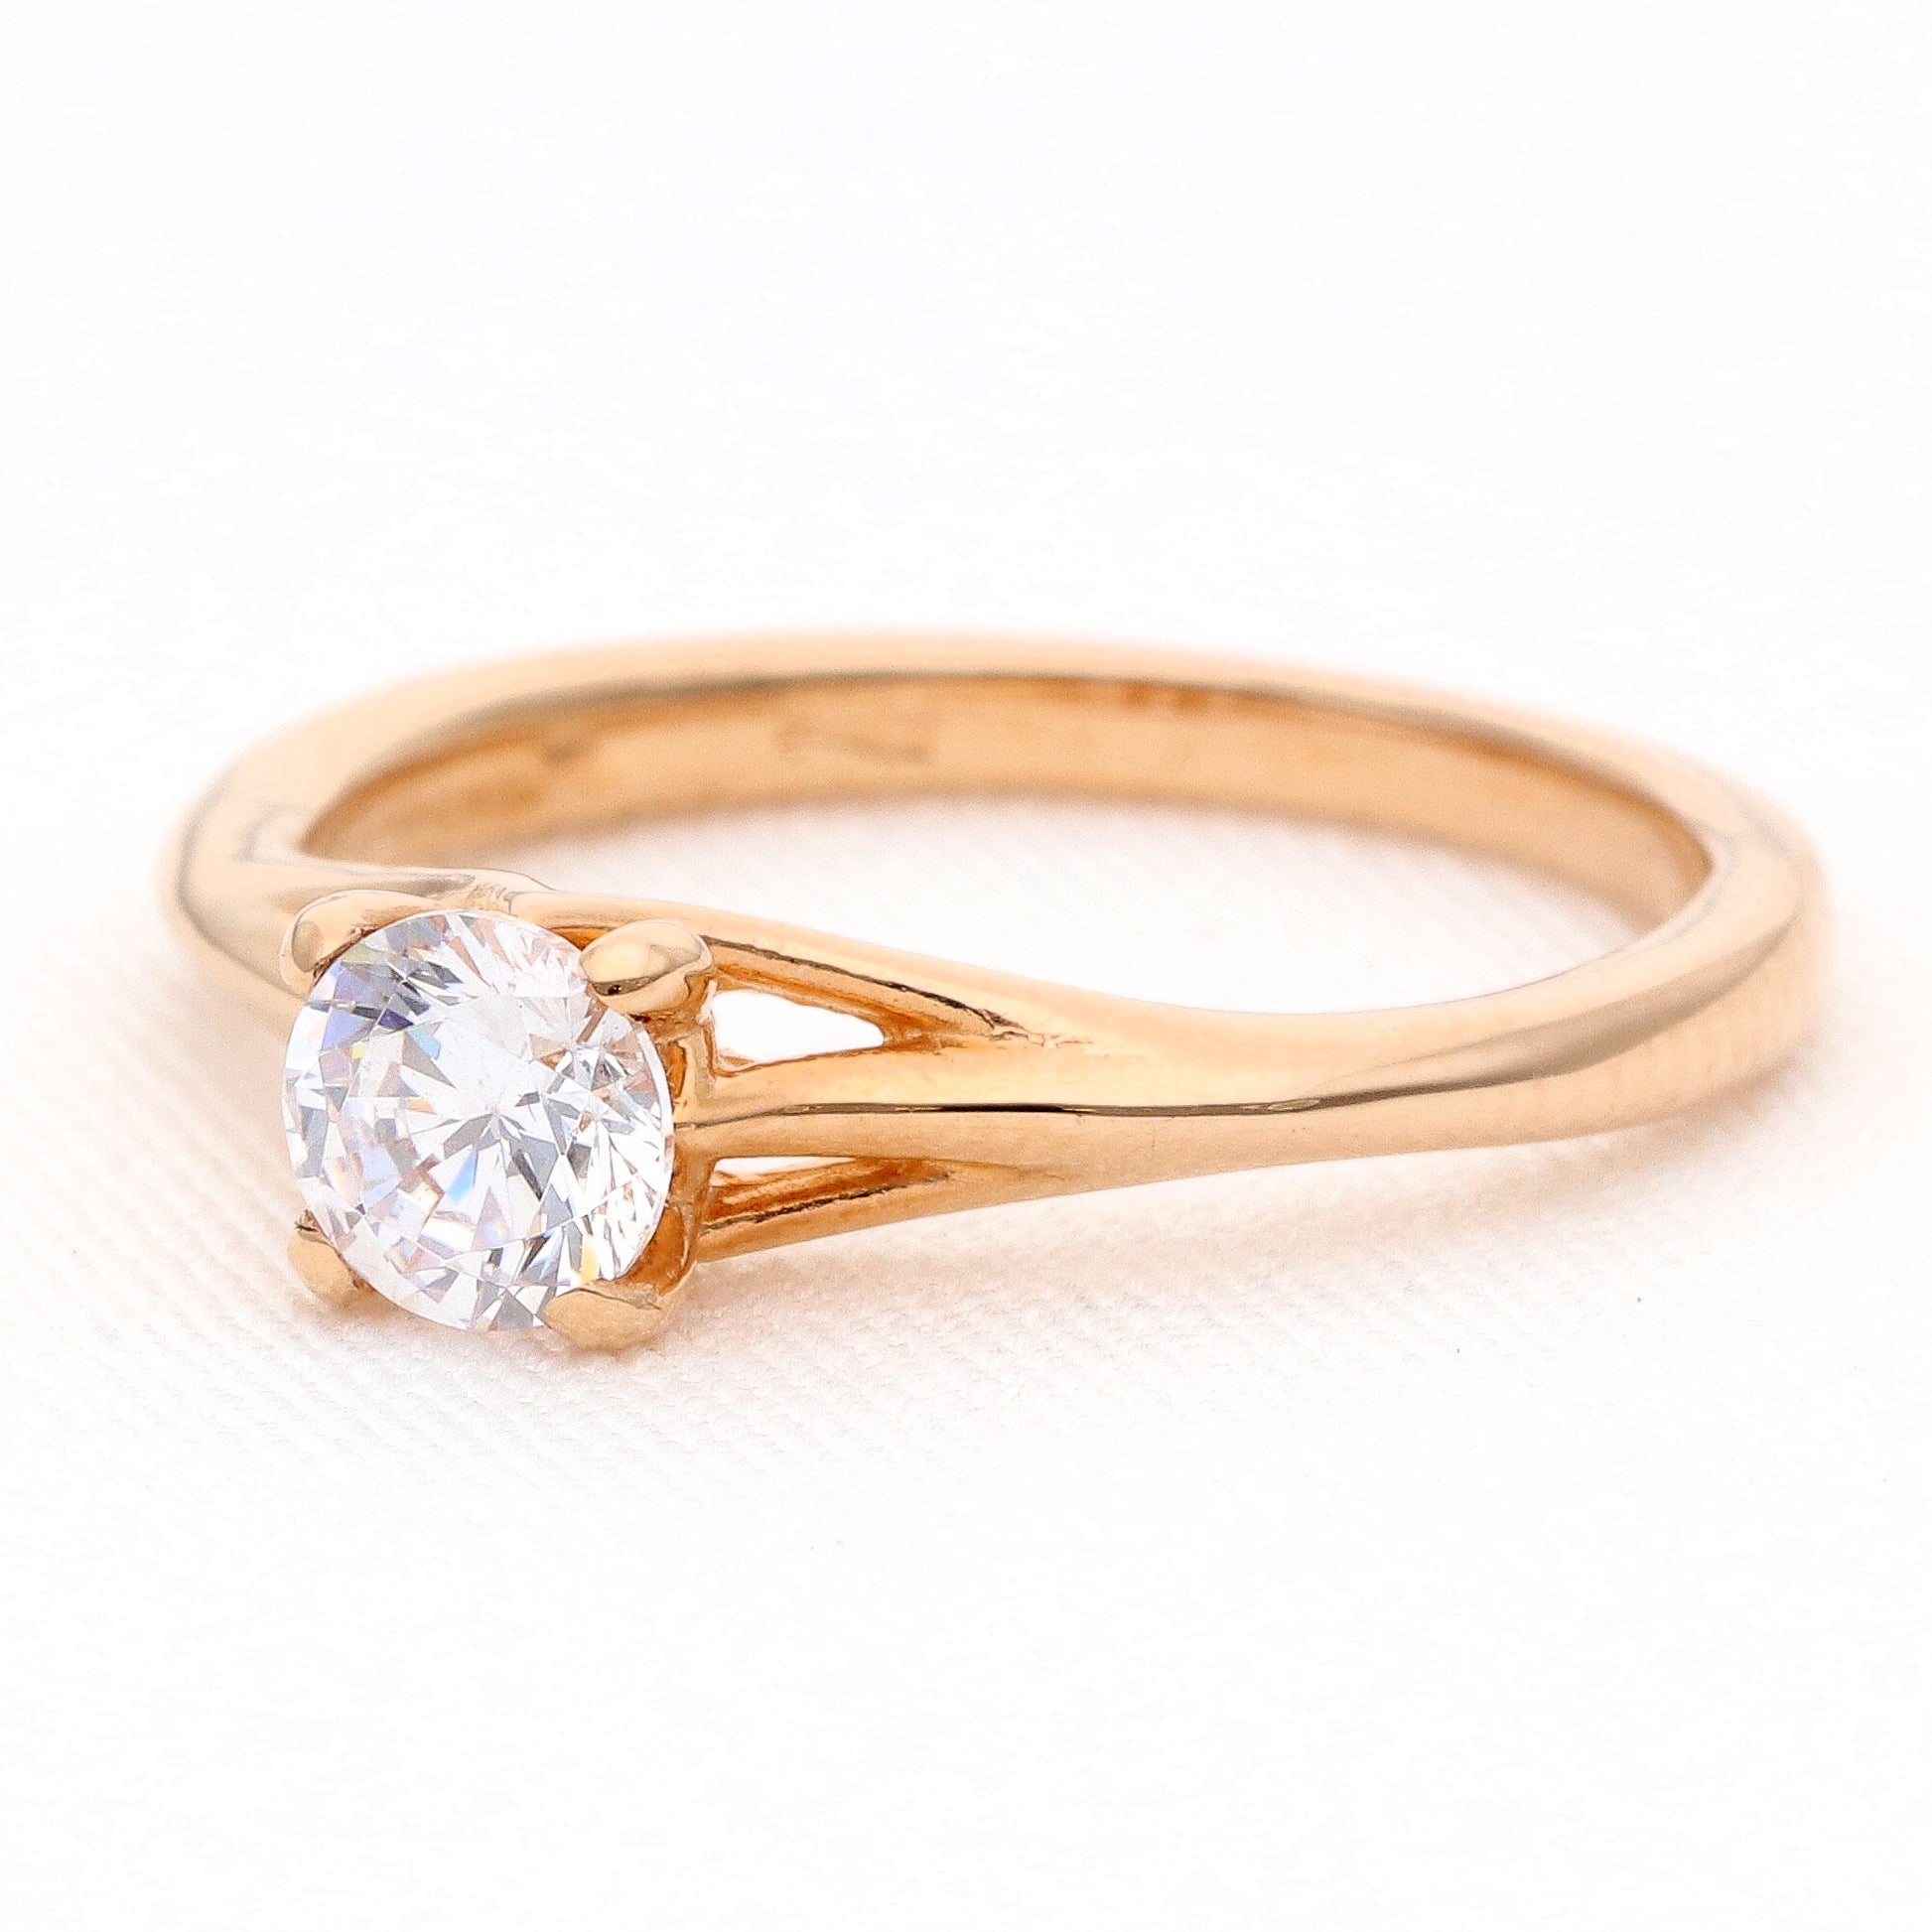 Auksinis žiedas vestuviniaiziedai.lt